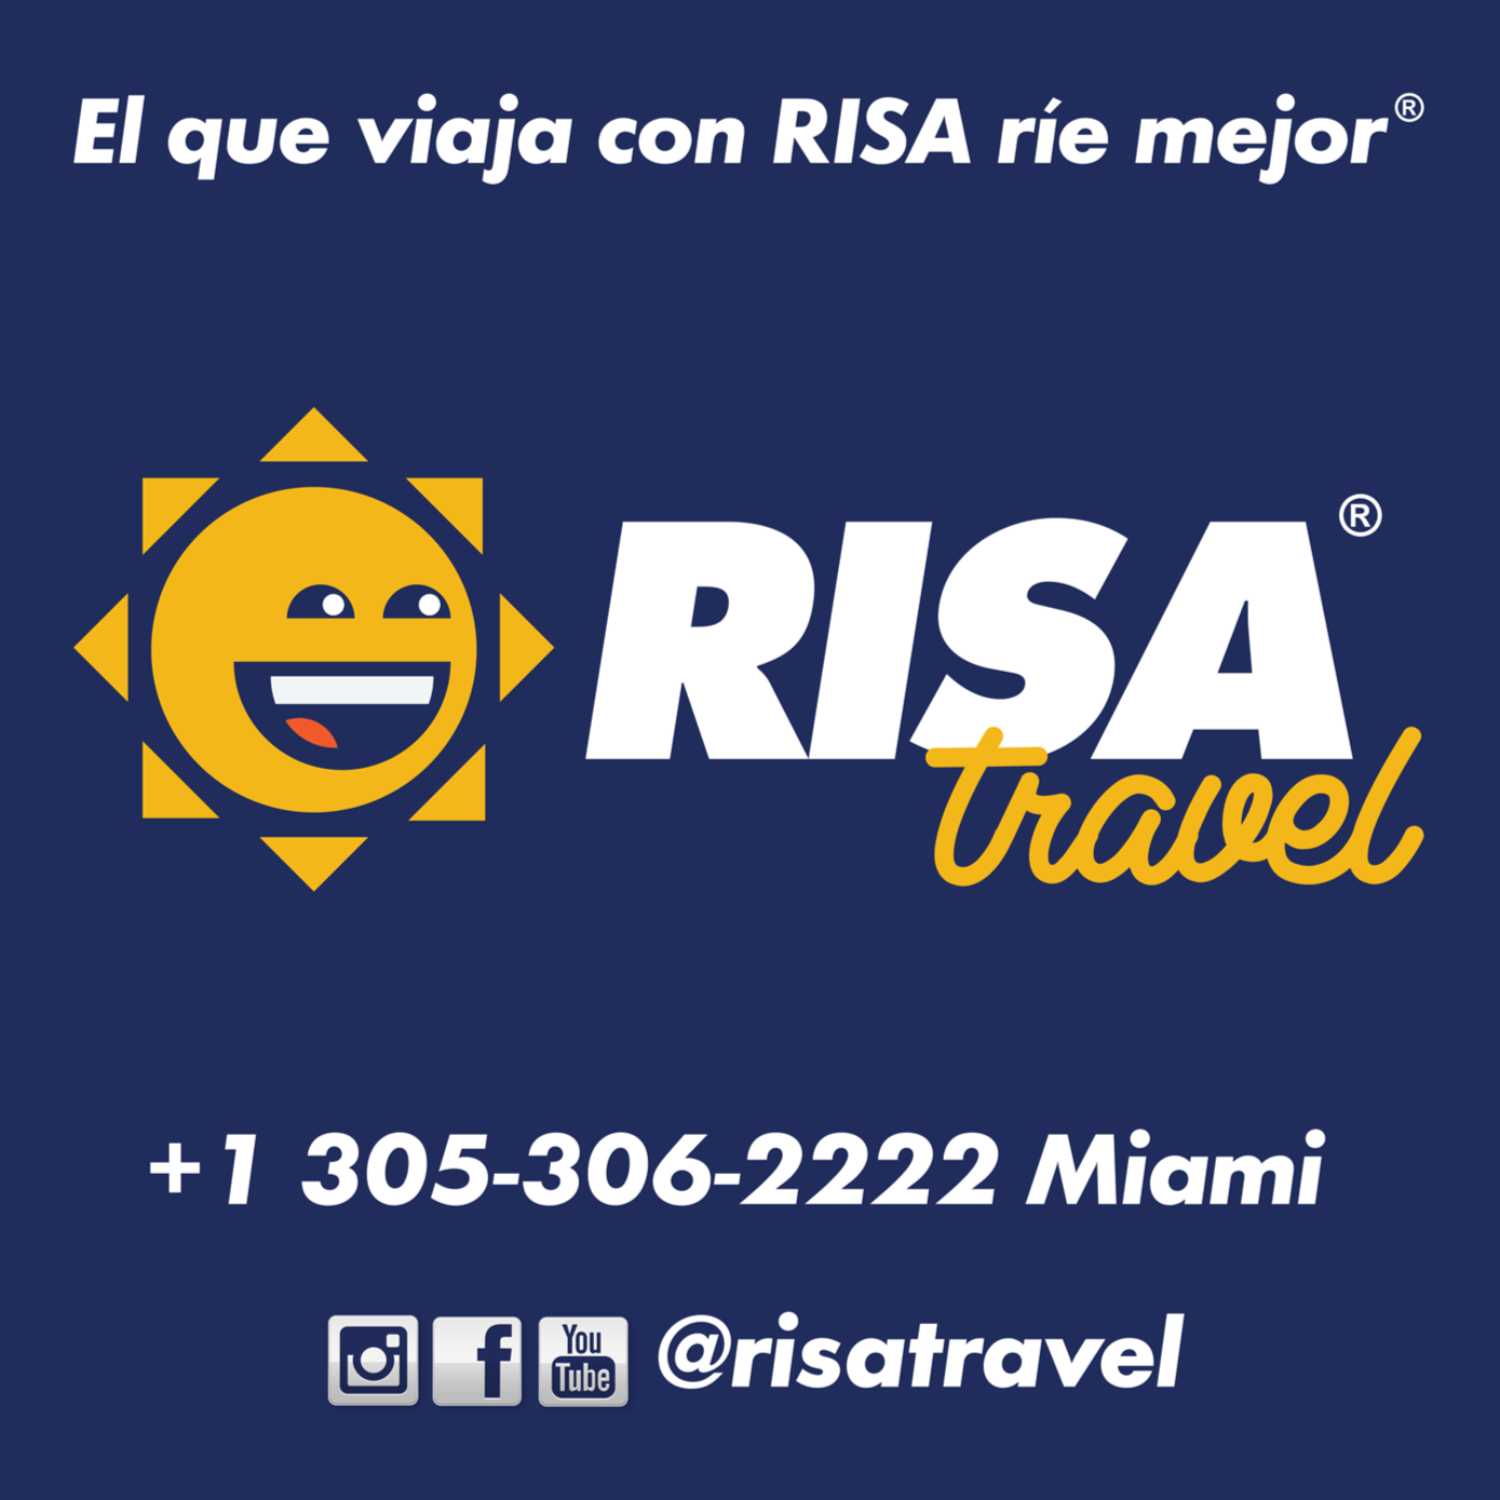 Cereza también elección RISA Travel, agencia viajes Punta Cana, Dubai y Europa